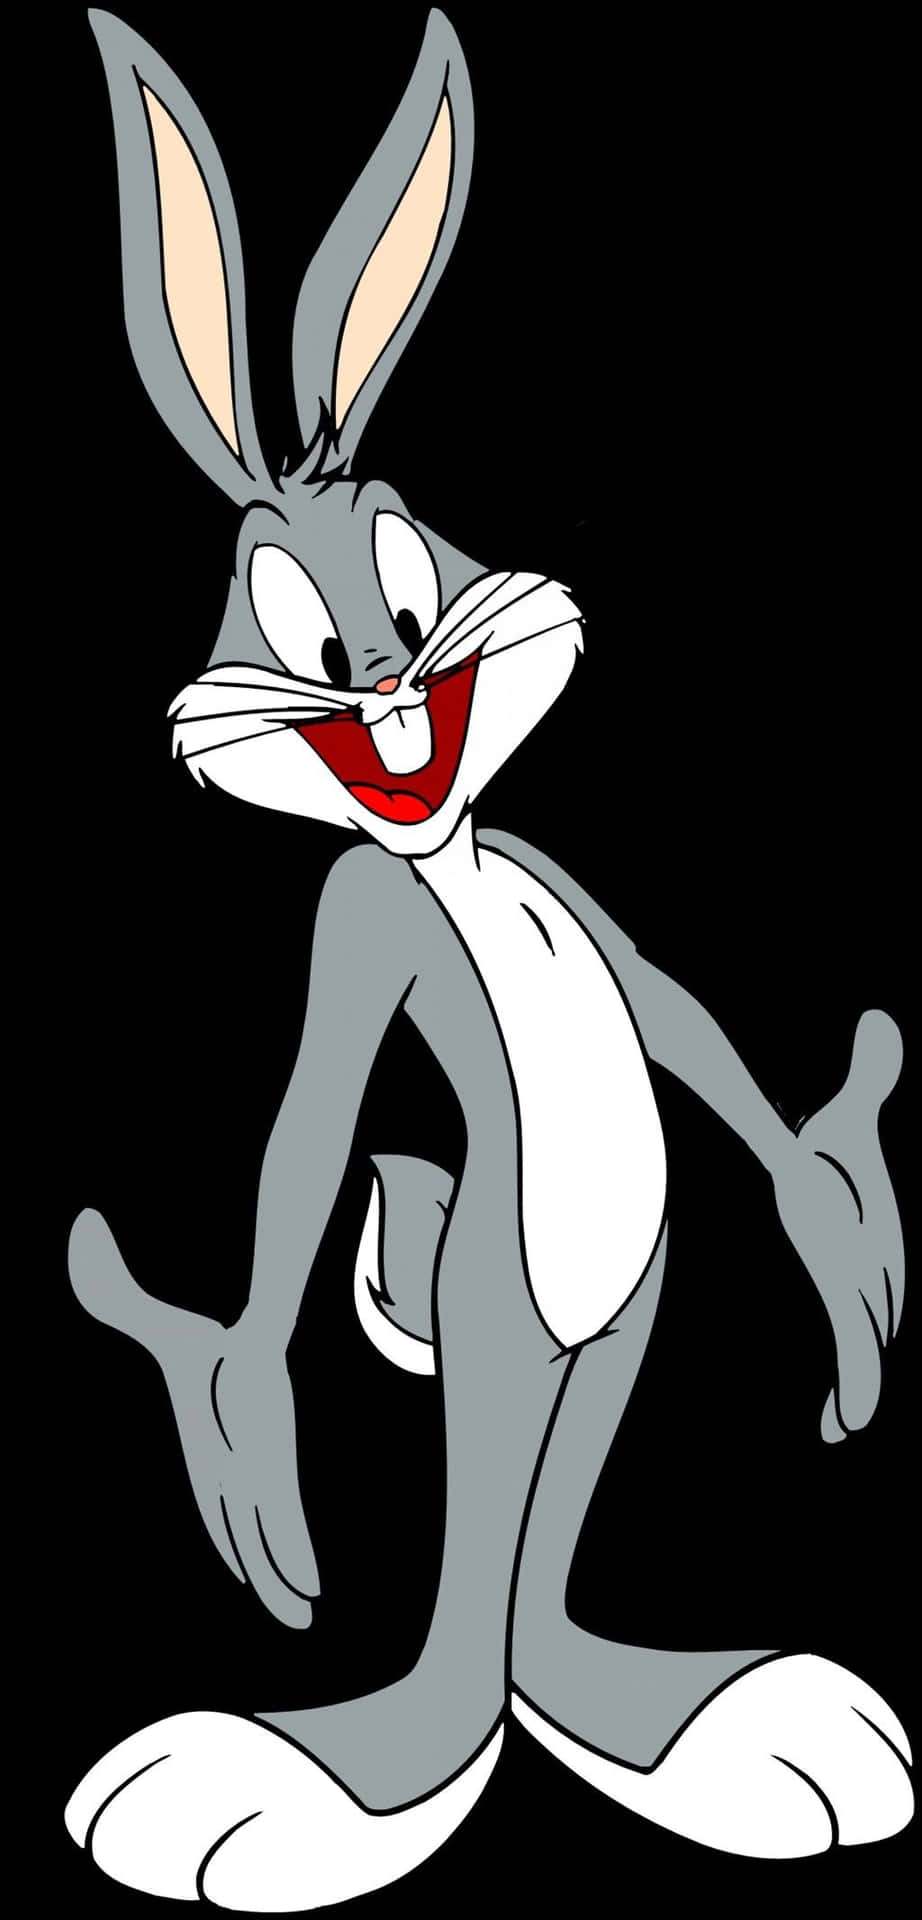 Fondode Pantalla Genial Con Retrato De Bugs Bunny. Fondo de pantalla